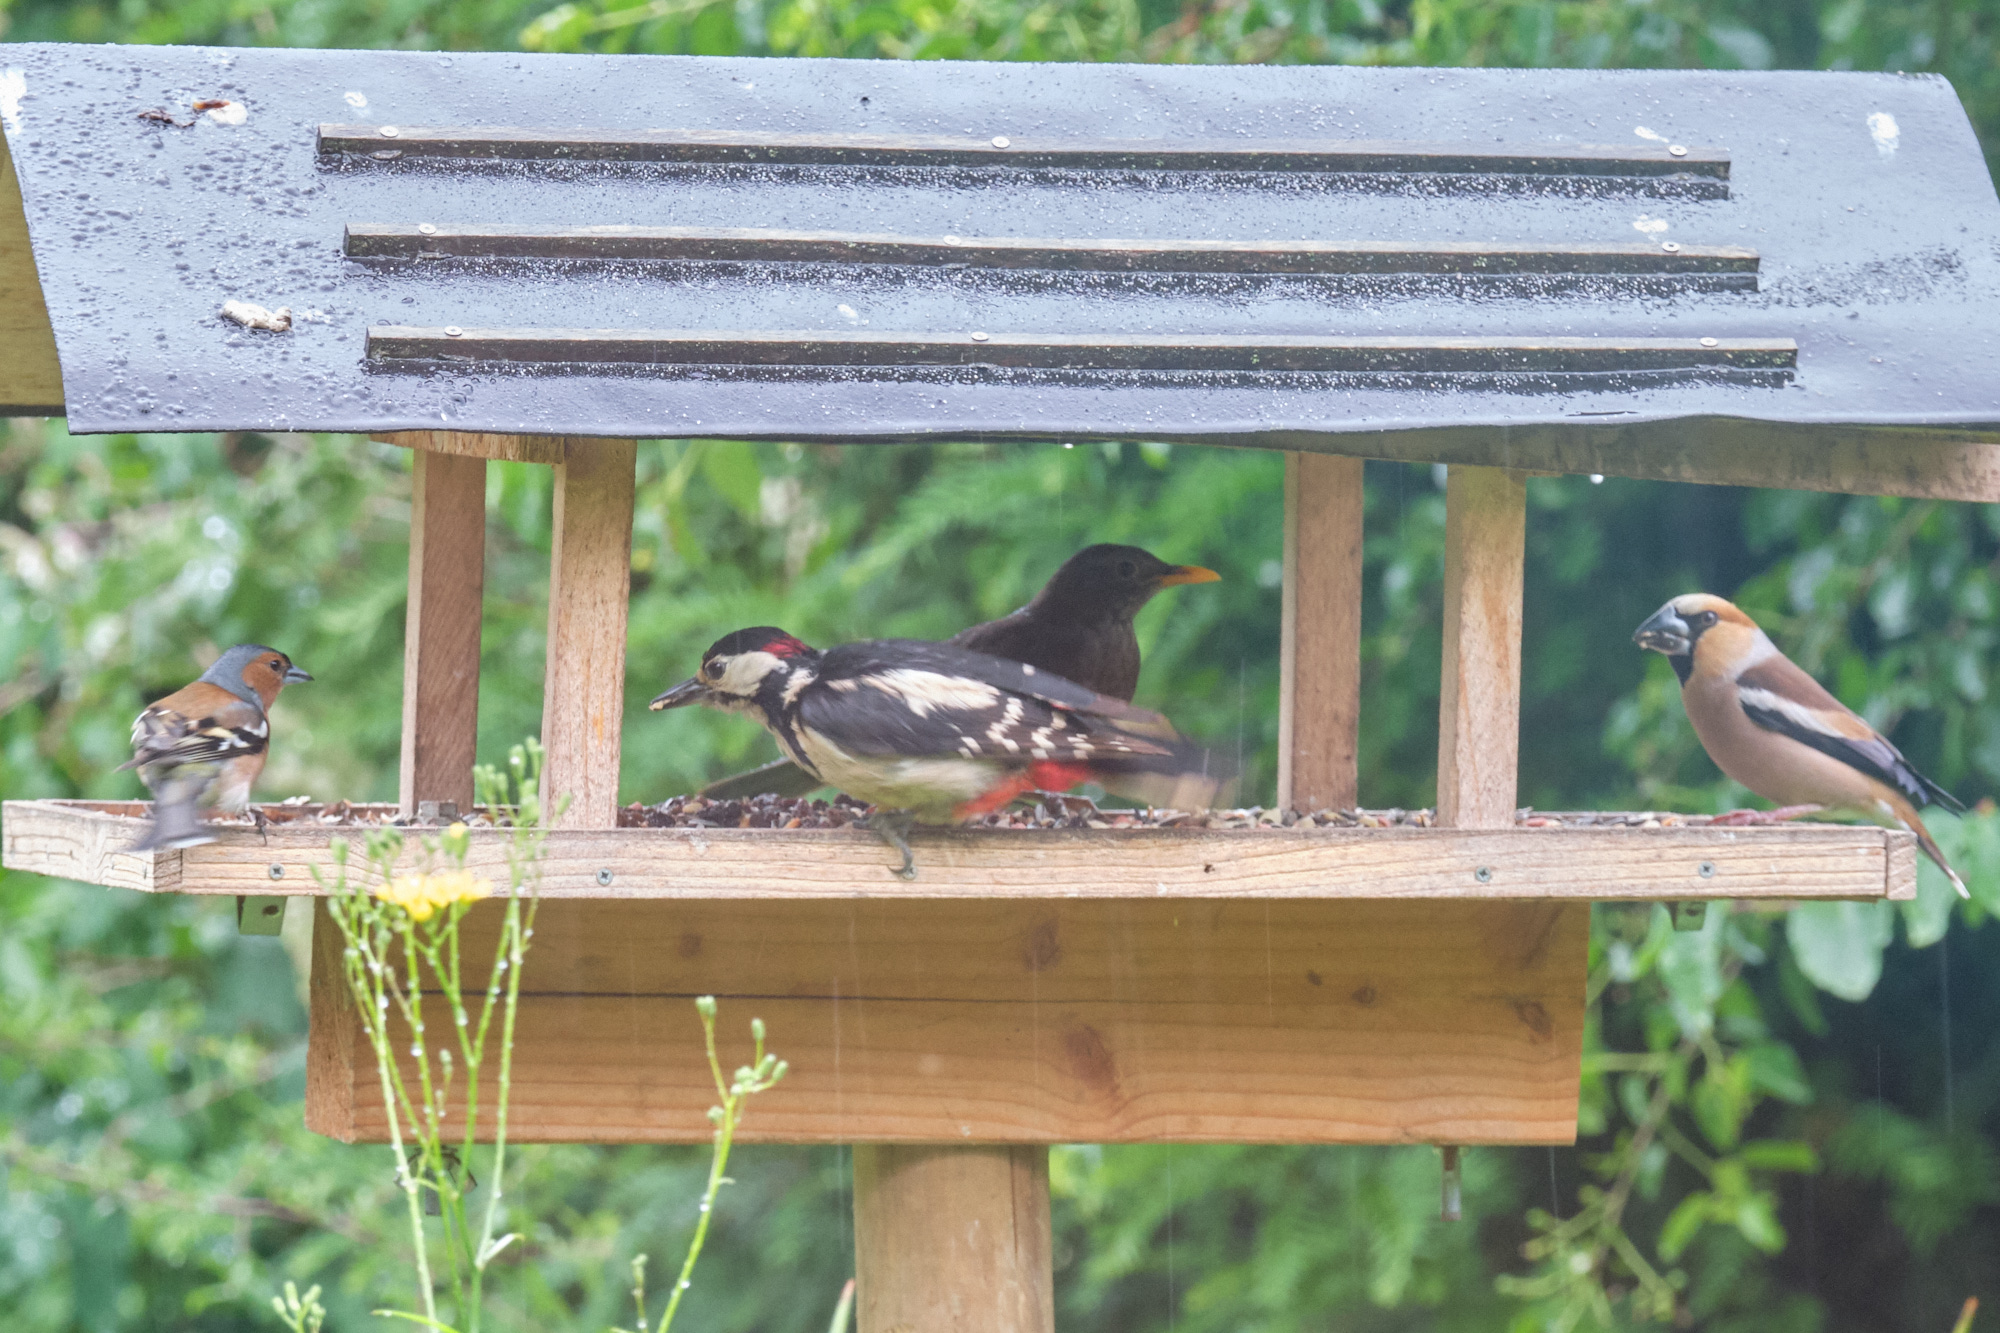 Buchfink, Buntspecht, Amsel, Kernbeißer / chaffinch, great spotted woodpecker, blackbird, hawfinch